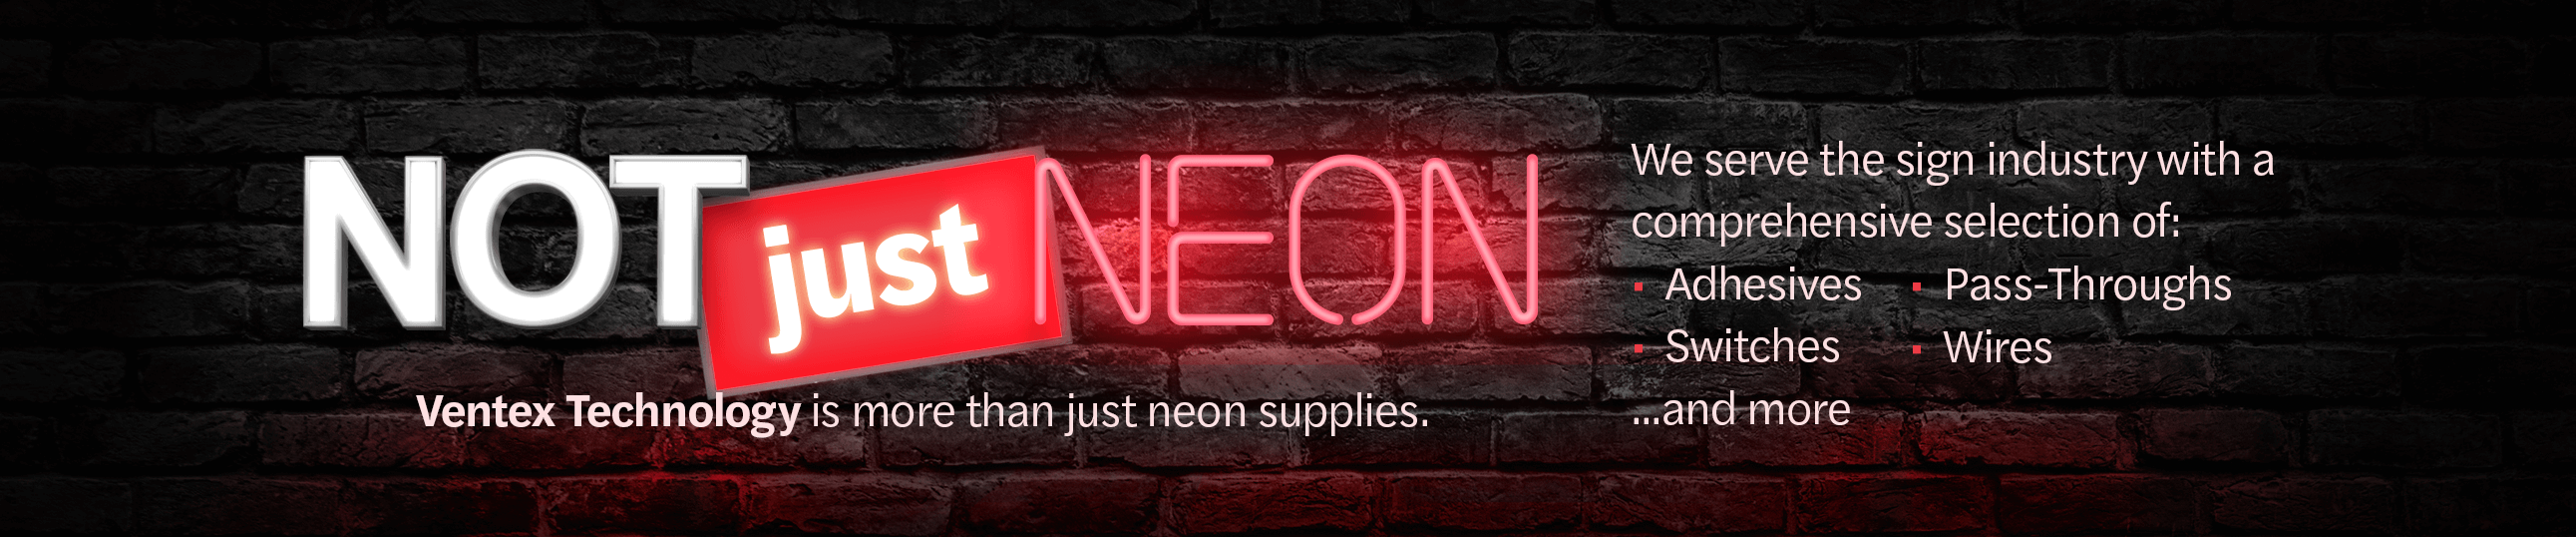 Ventex Technology: Not Just Neon